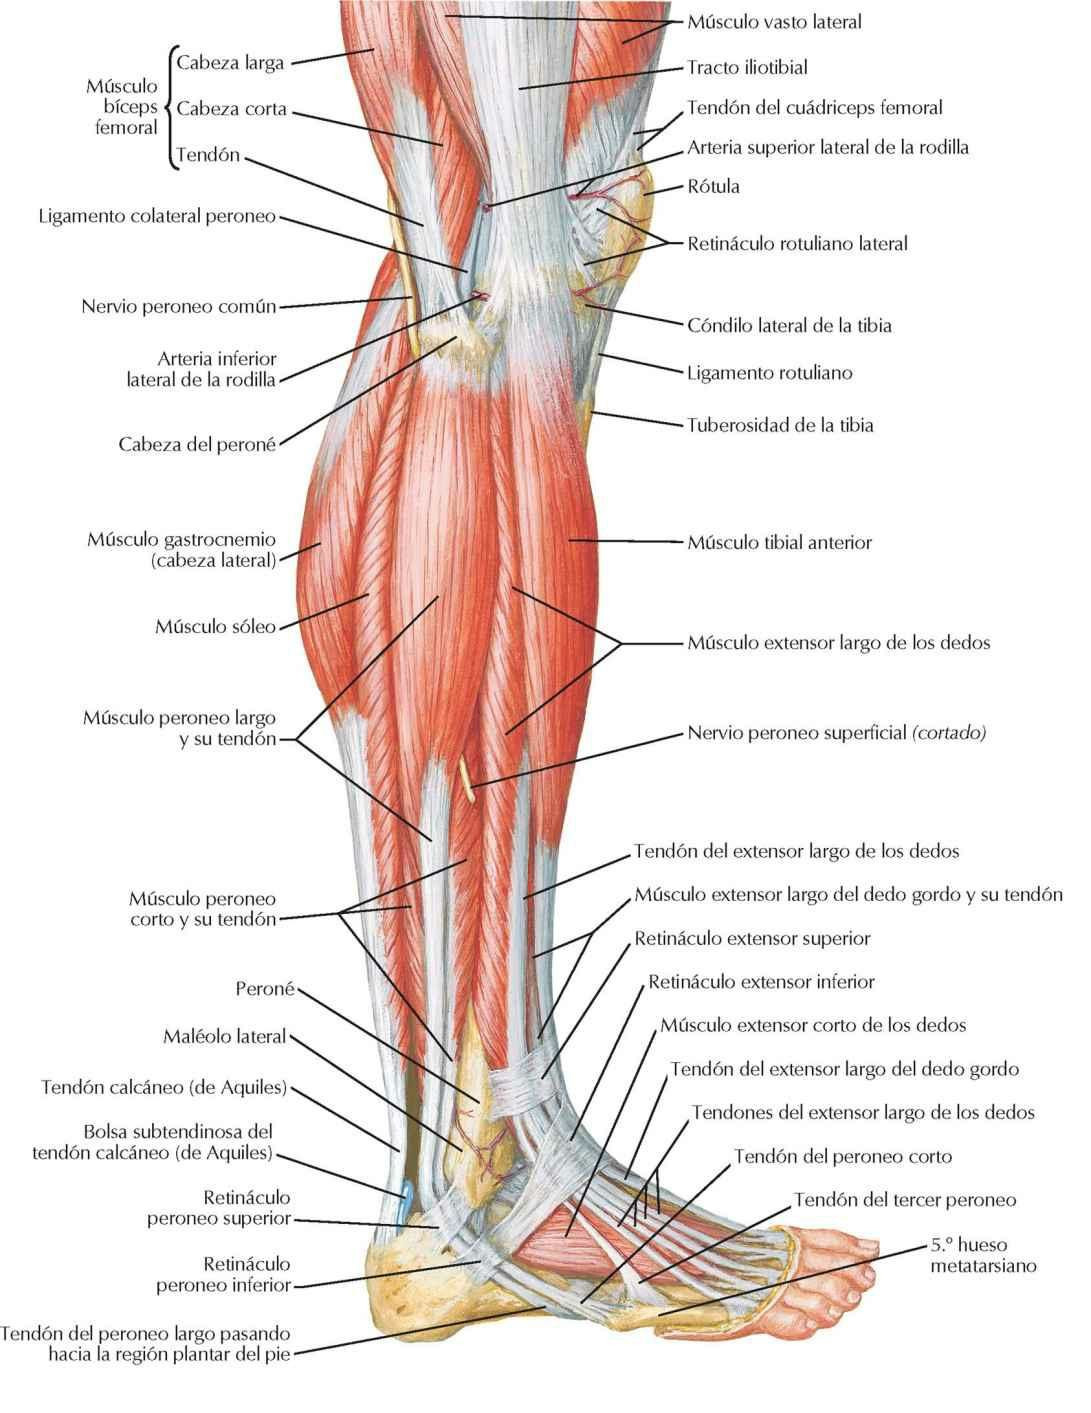 Músculos de la pierna: visión lateral